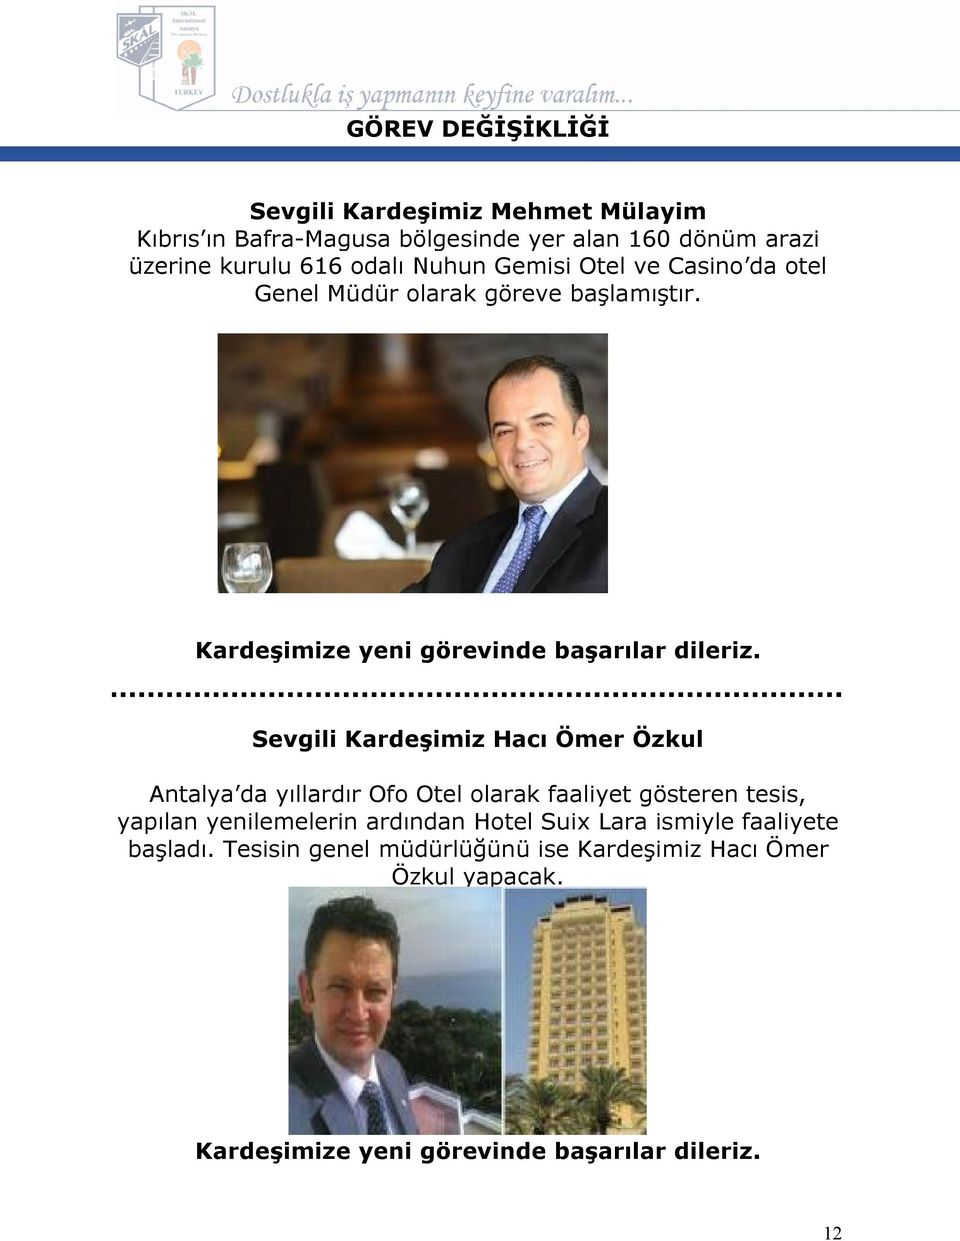 Sevgili Kardeşimiz Hacı Ömer Özkul Antalya da yıllardır Ofo Otel olarak faaliyet gösteren tesis, yapılan yenilemelerin ardından Hotel